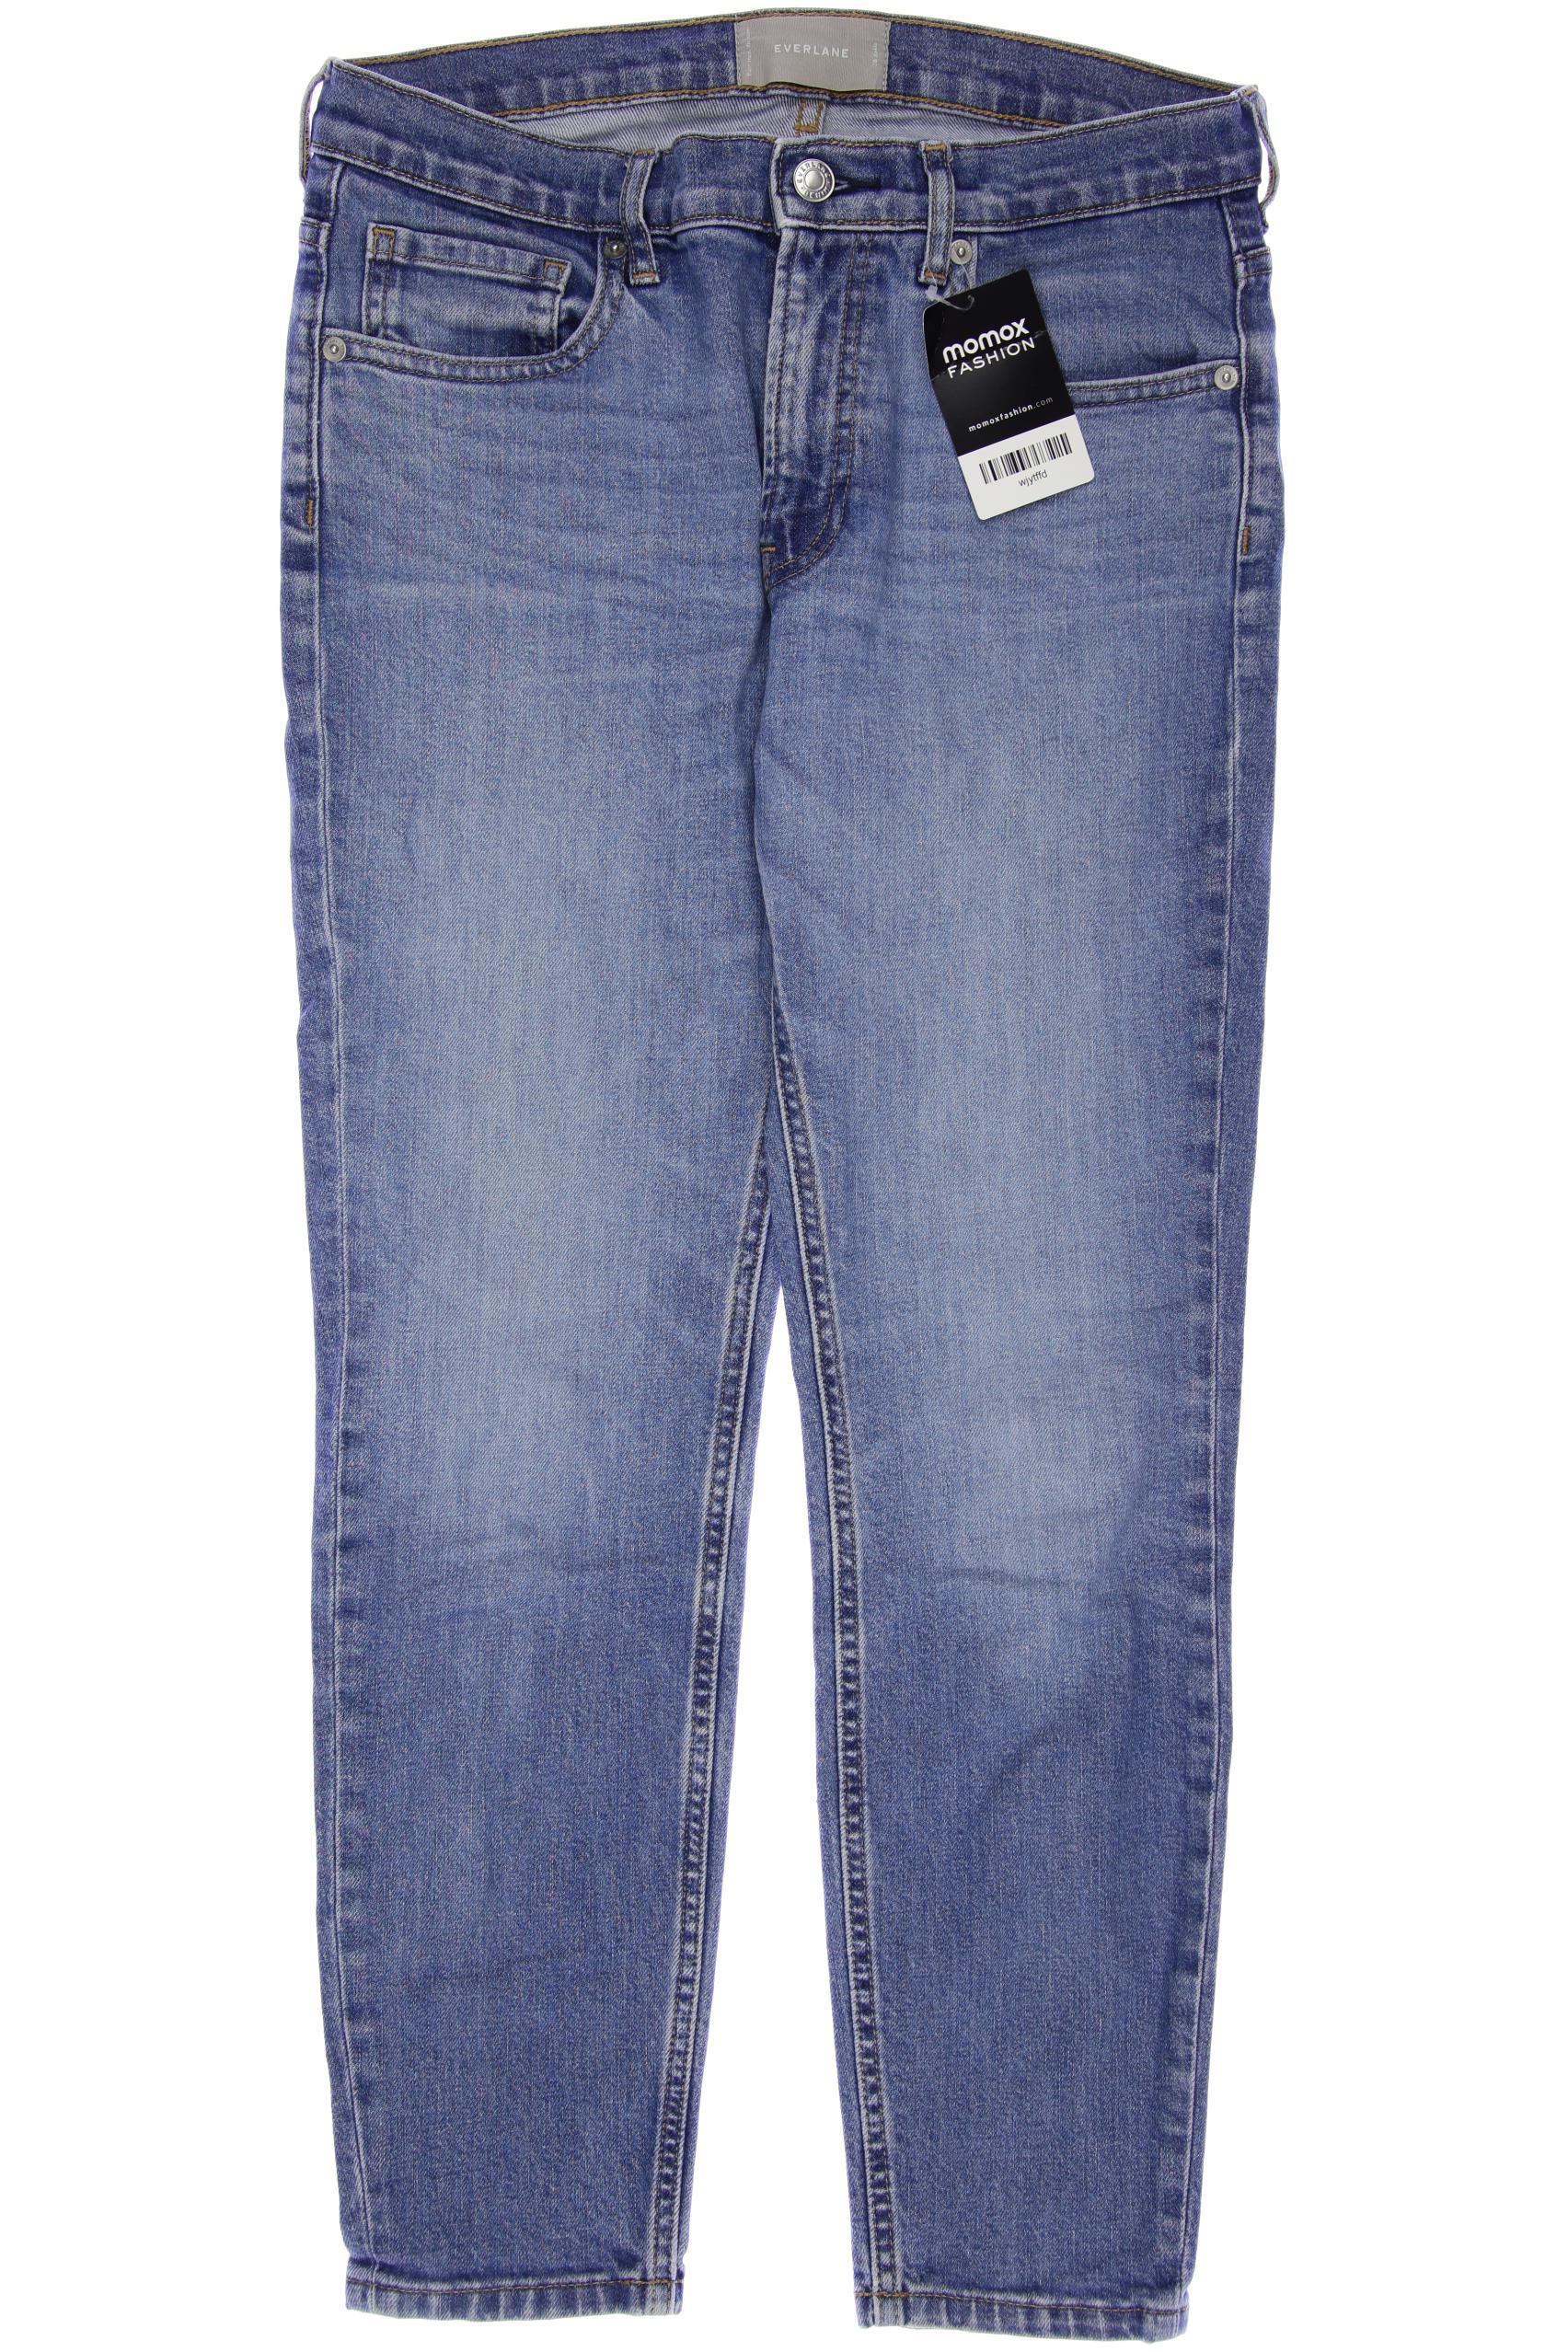 Everlane Damen Jeans, blau, Gr. 38 von Everlane